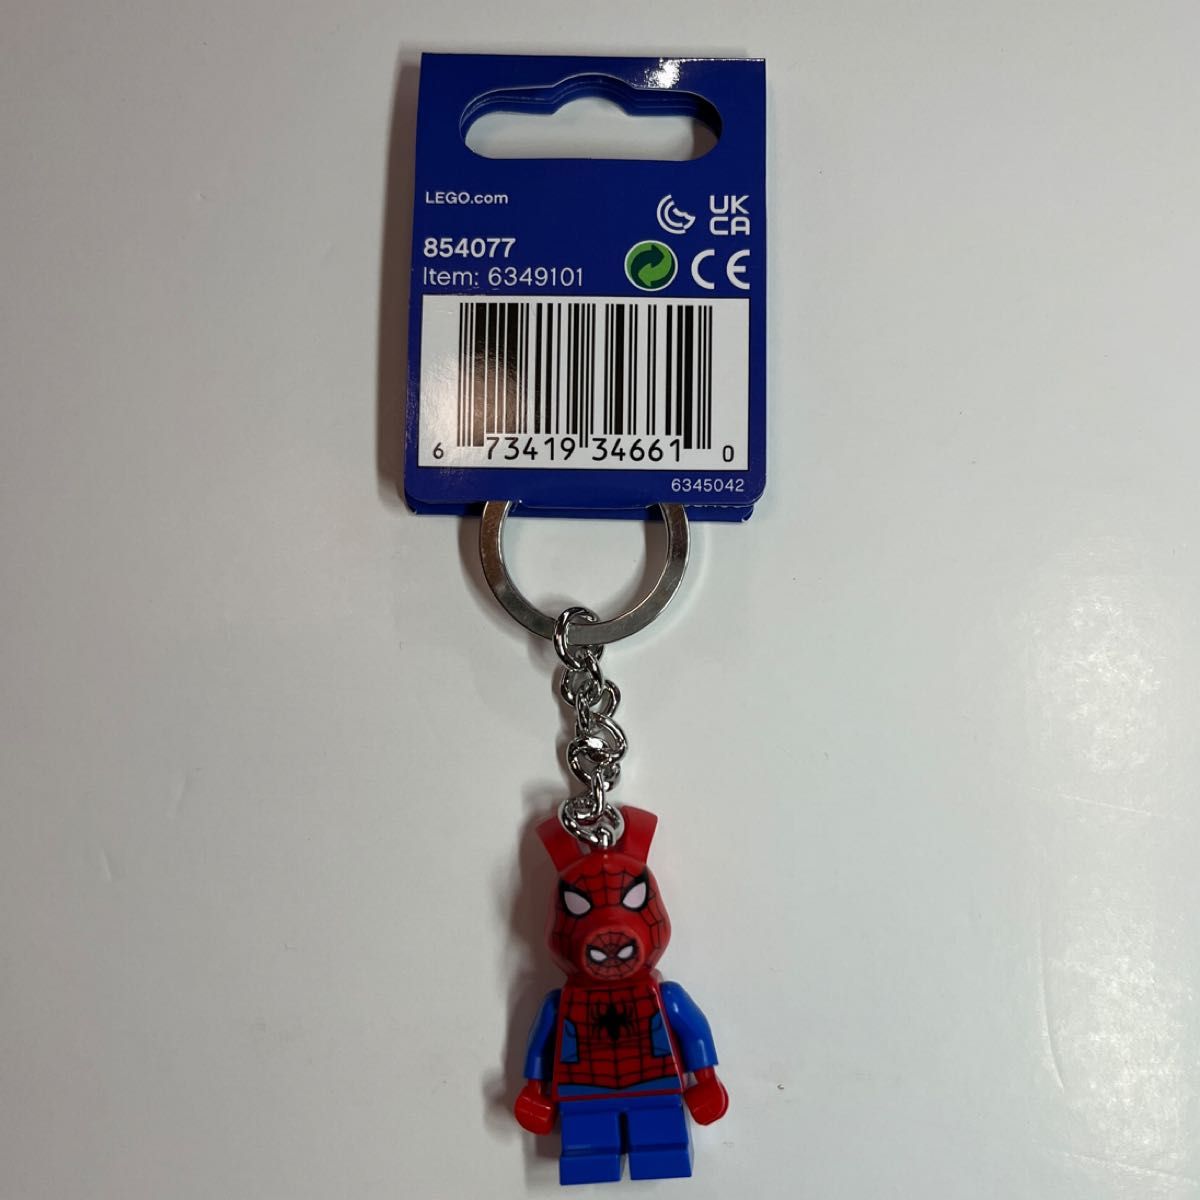 レゴ （LEGO) キーチェーン マーベル スパイダーマン スパイダーハム 854077  キーホルダー